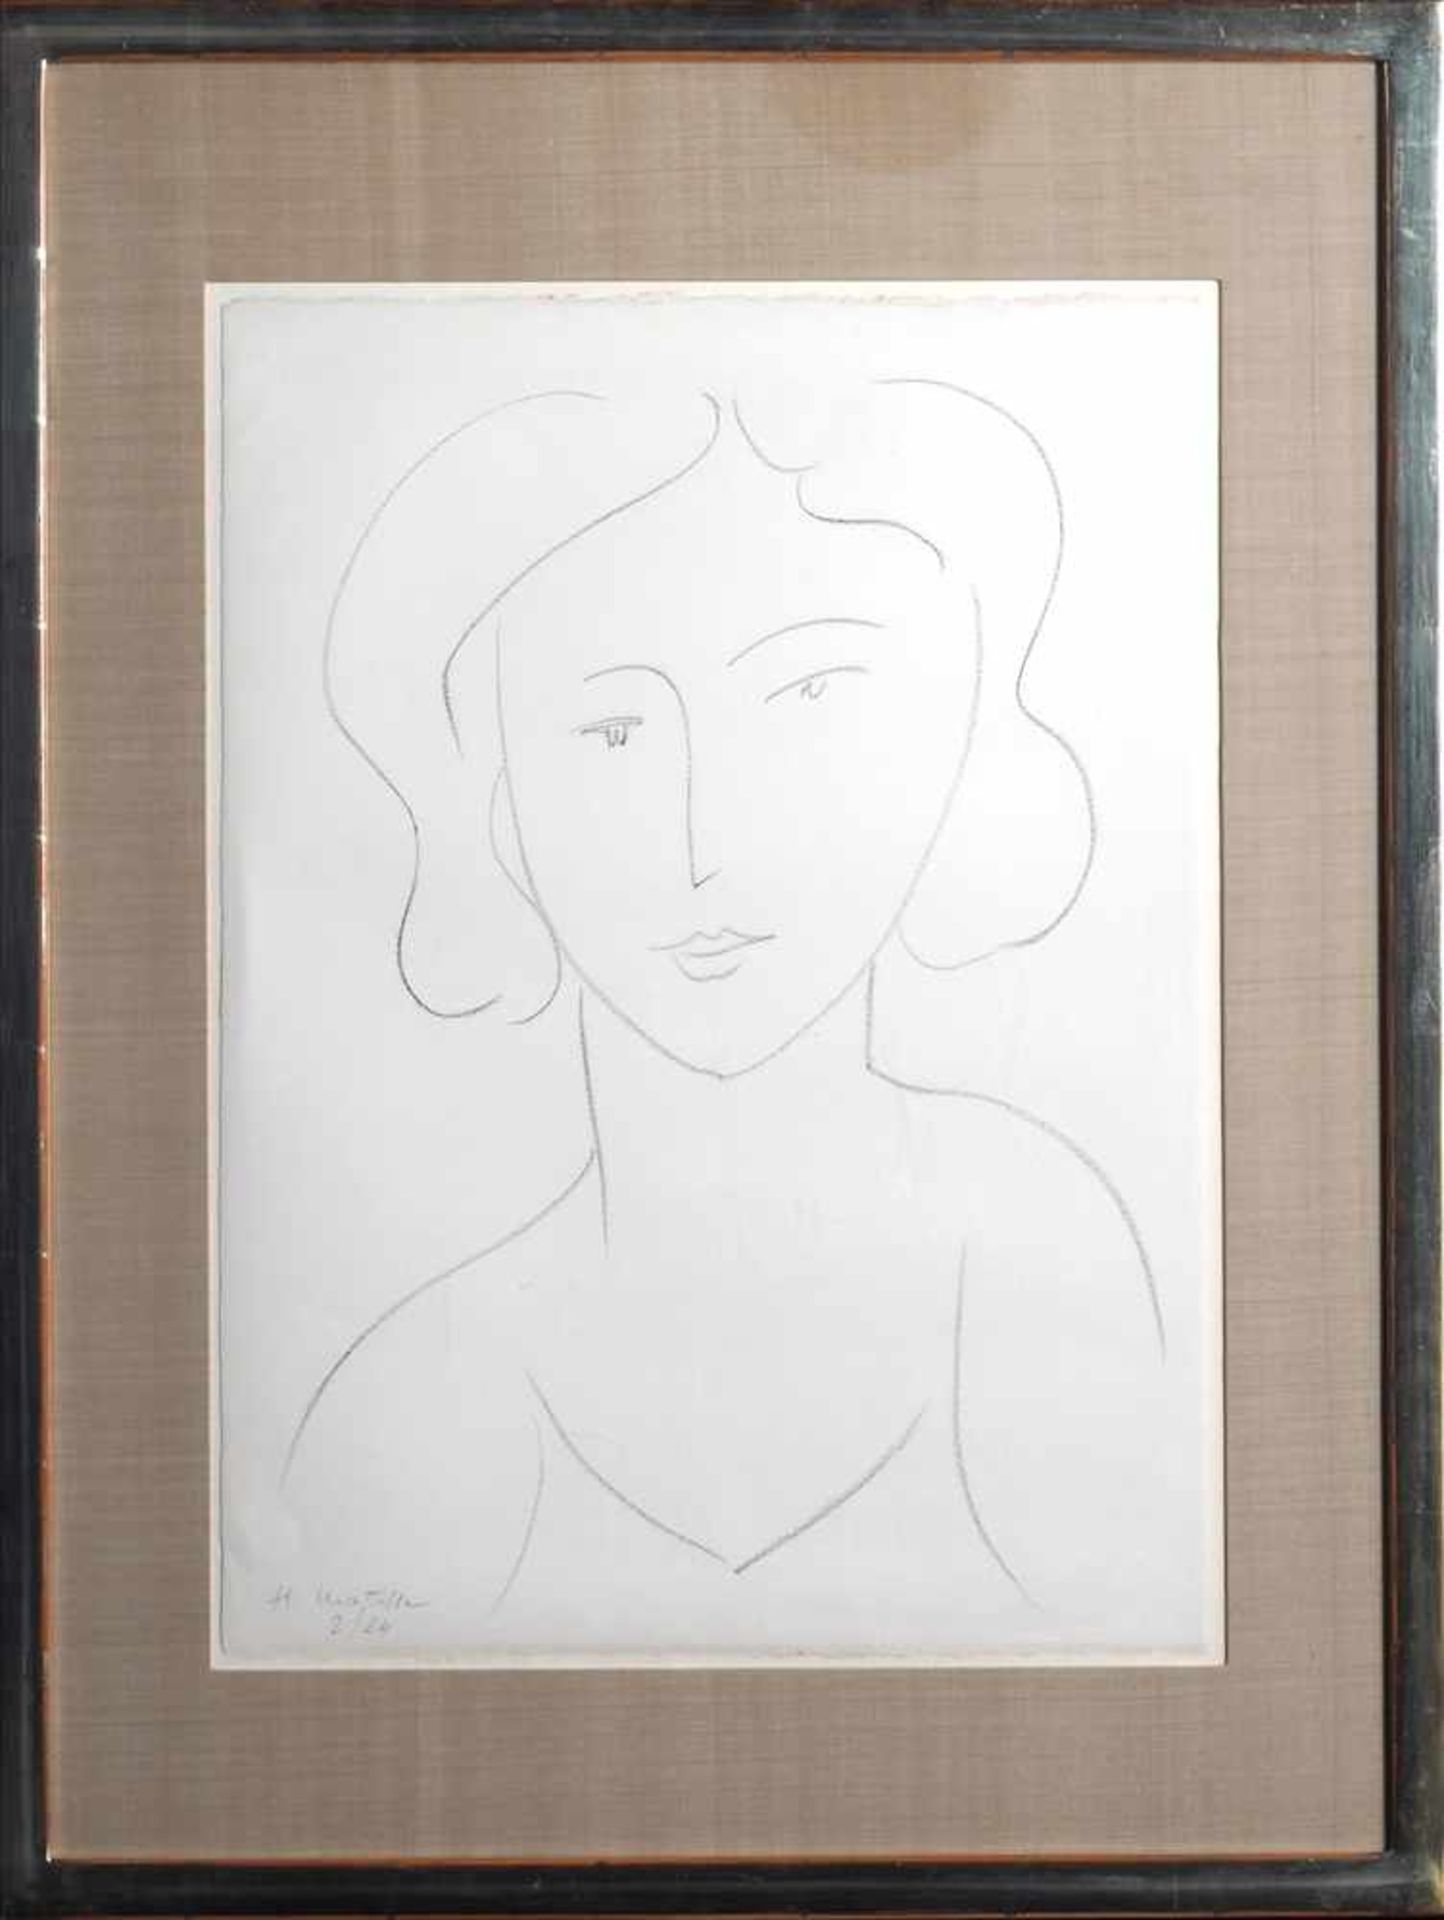 Frauenkopfnach Henry Matisse, unten links signiert und nummeriert, 2/24, hinter Passepartout ca.